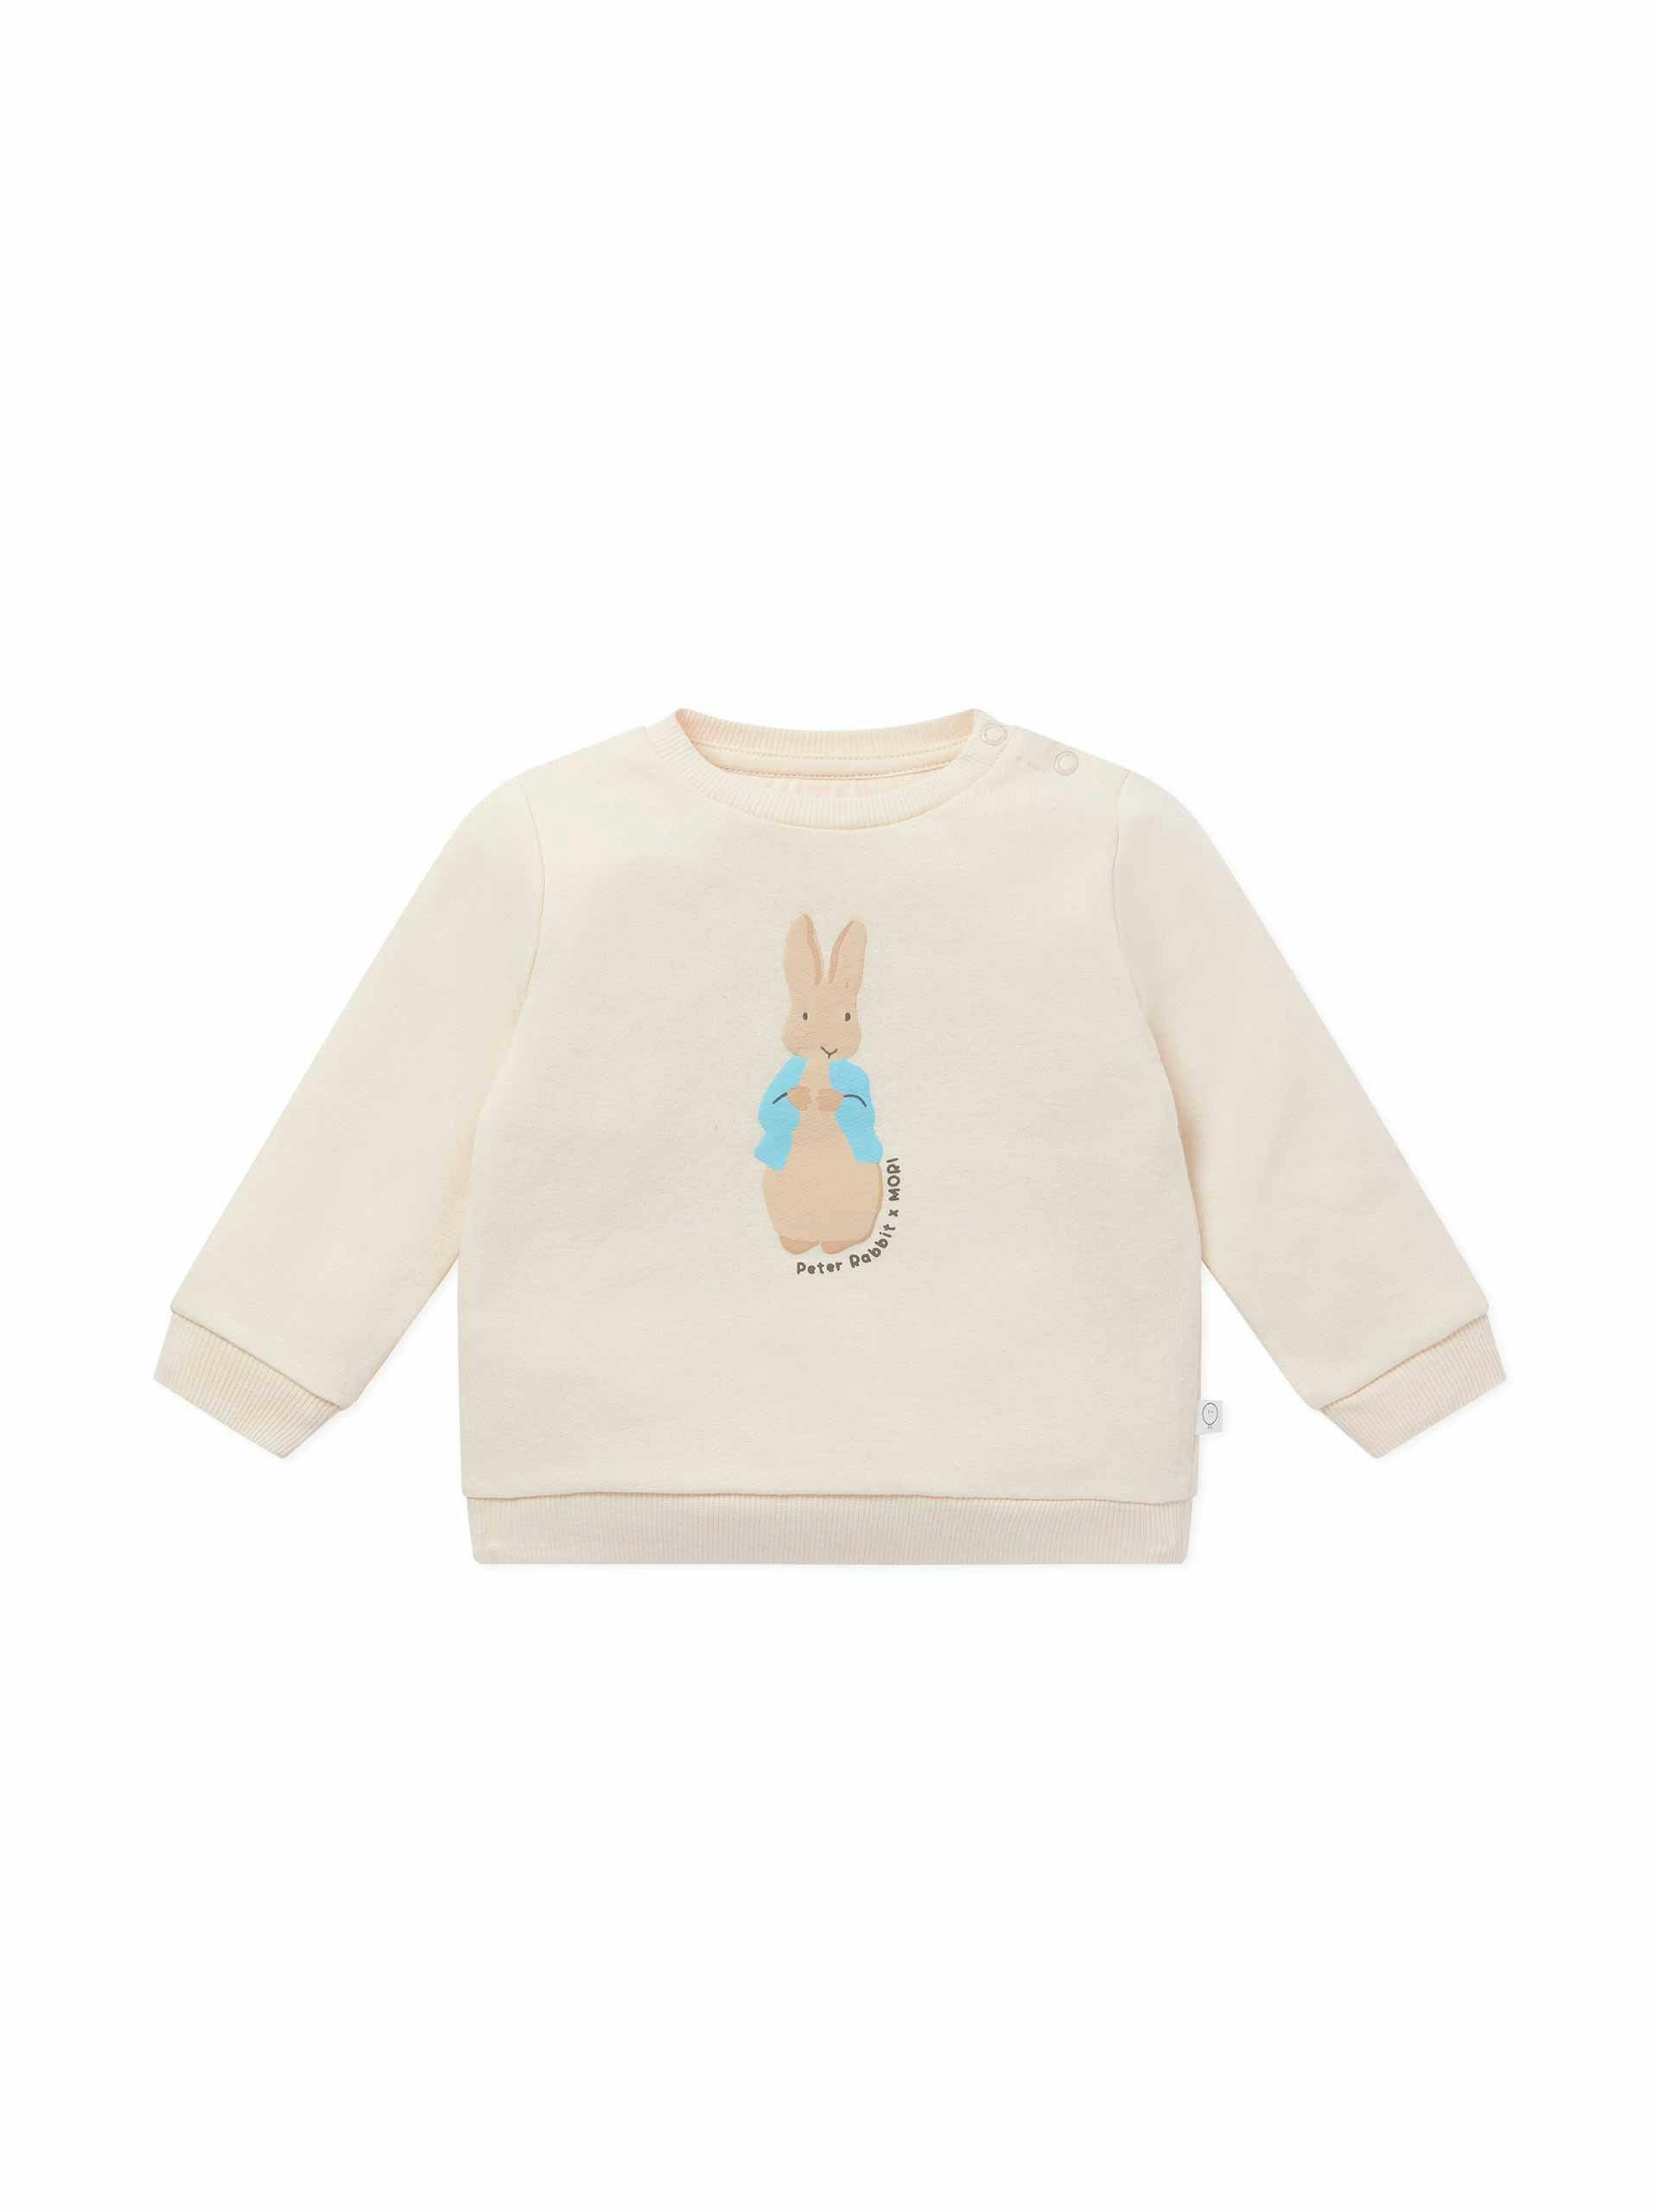 Peter Rabbit sweatshirt